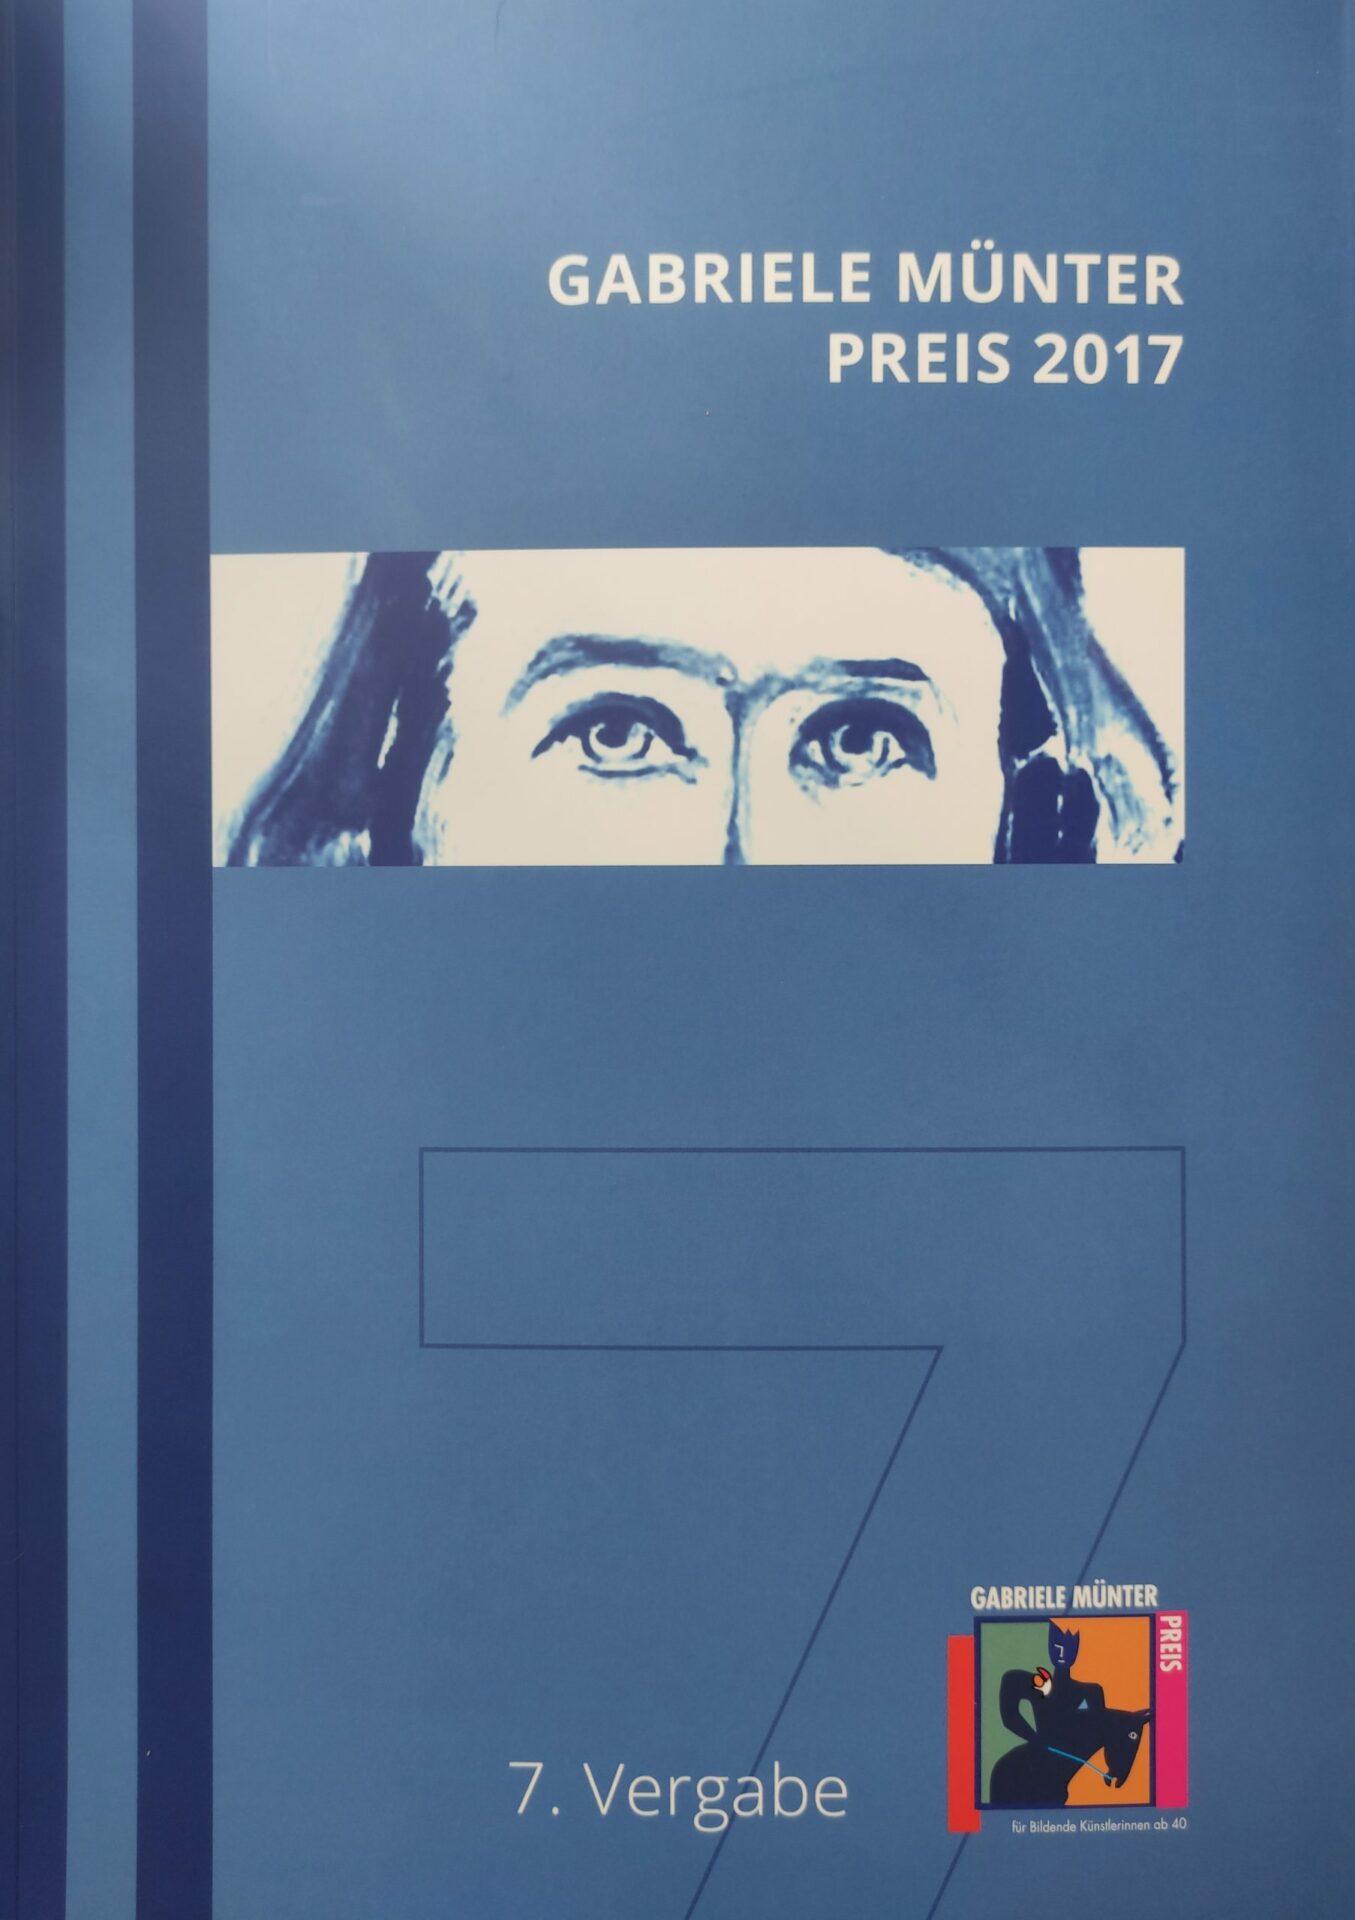 Katalogcover: "Gabriele Münter Preis 2017"